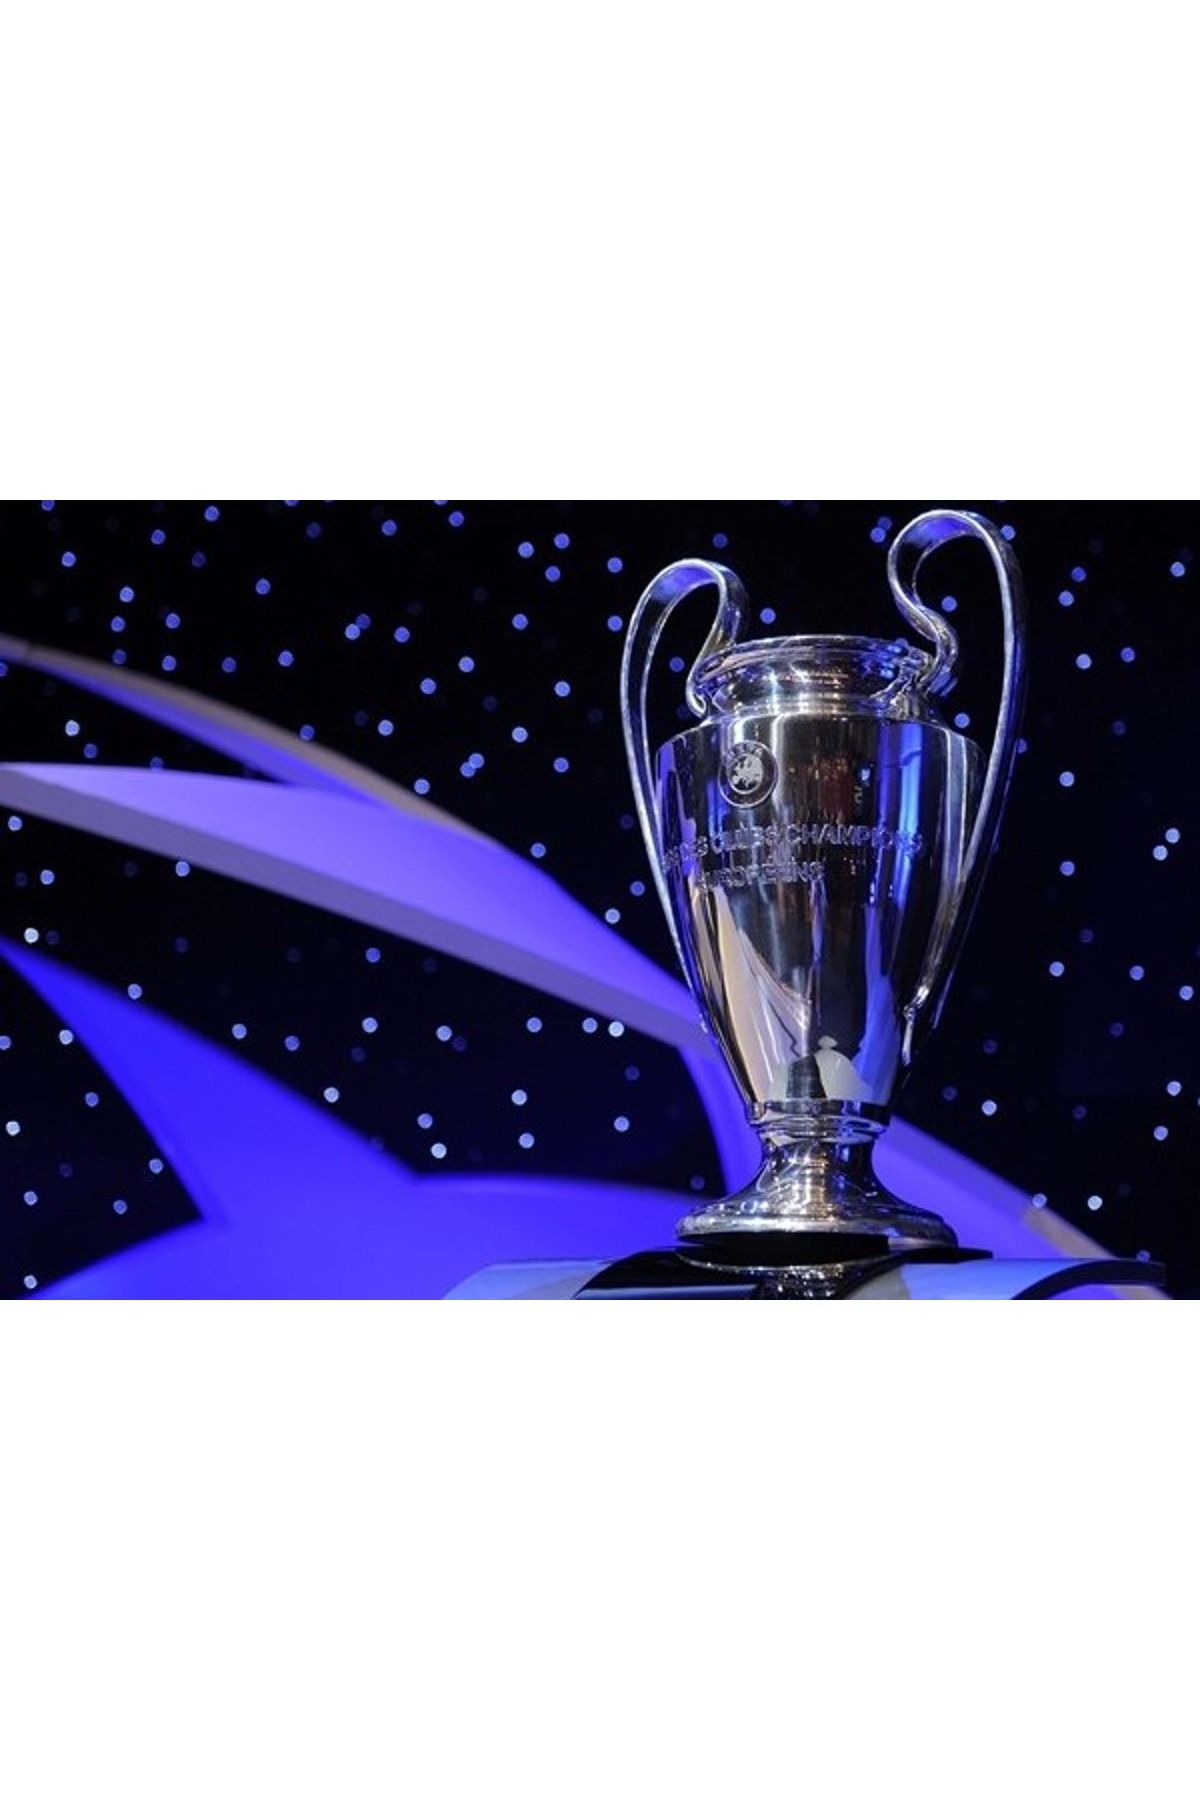 FLEXİS KOPYA - UEFA ŞAMPİYONLAR LİGİ KUPASI 20 cm